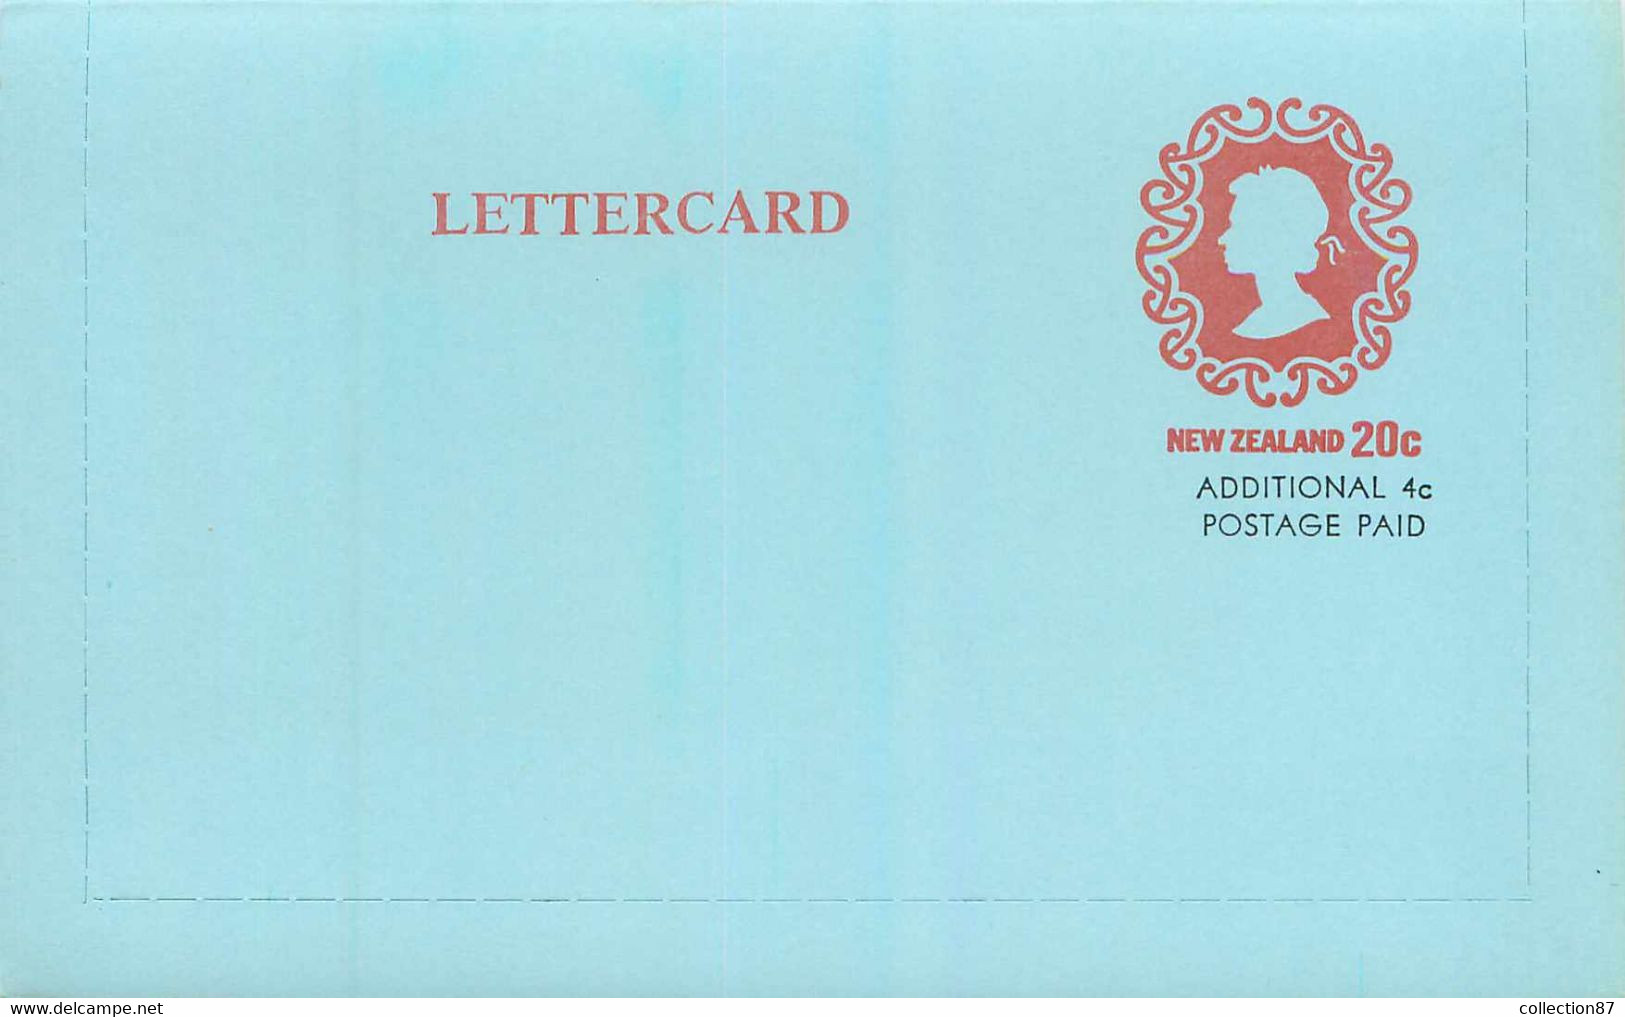 NEW ZEALAND - LETTERCARD 20c Additional 4c Postage Paid < ENTIER POSTAL NOUVELLE ZELANDE 20c + 4 Cent - QUEEN ELISABETH - Entiers Postaux